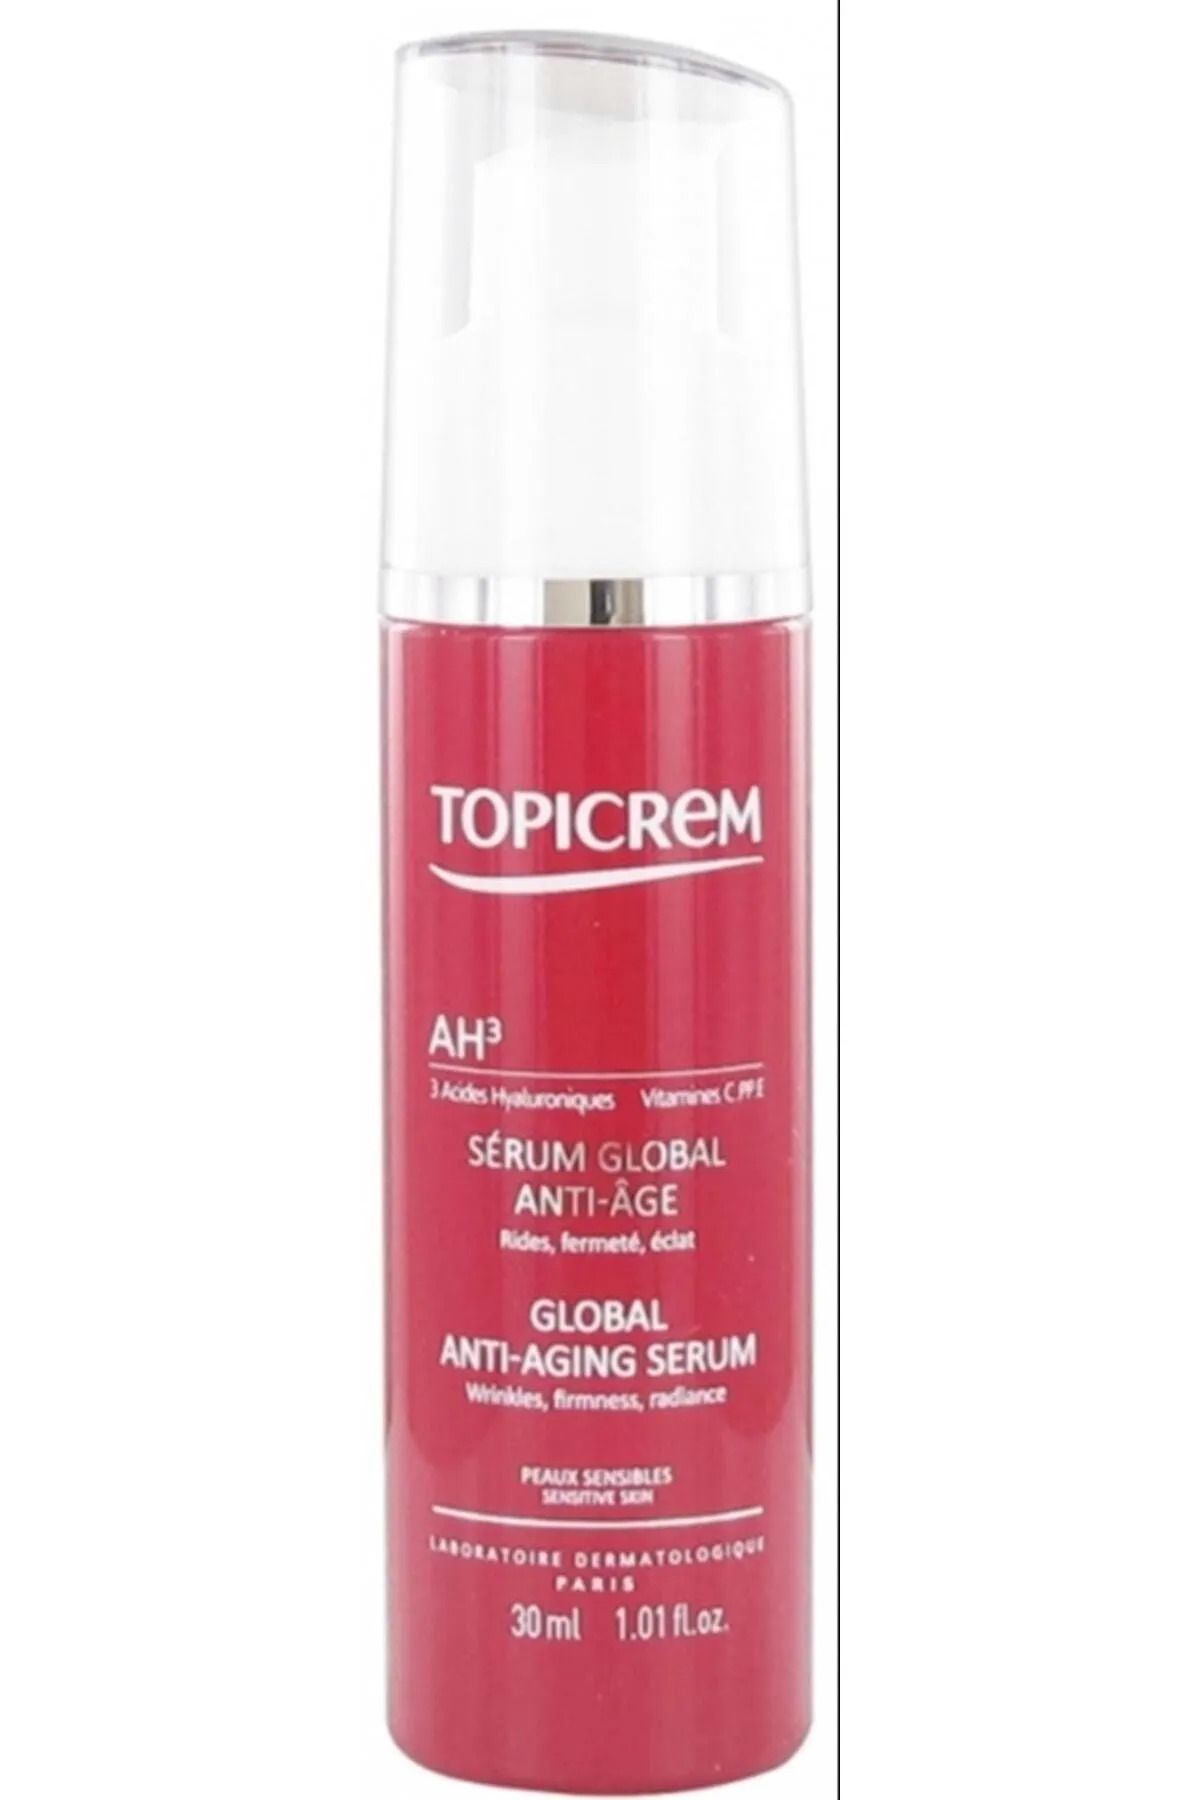 Topicrem Ah3 Global Anti-aging Serum 30ml